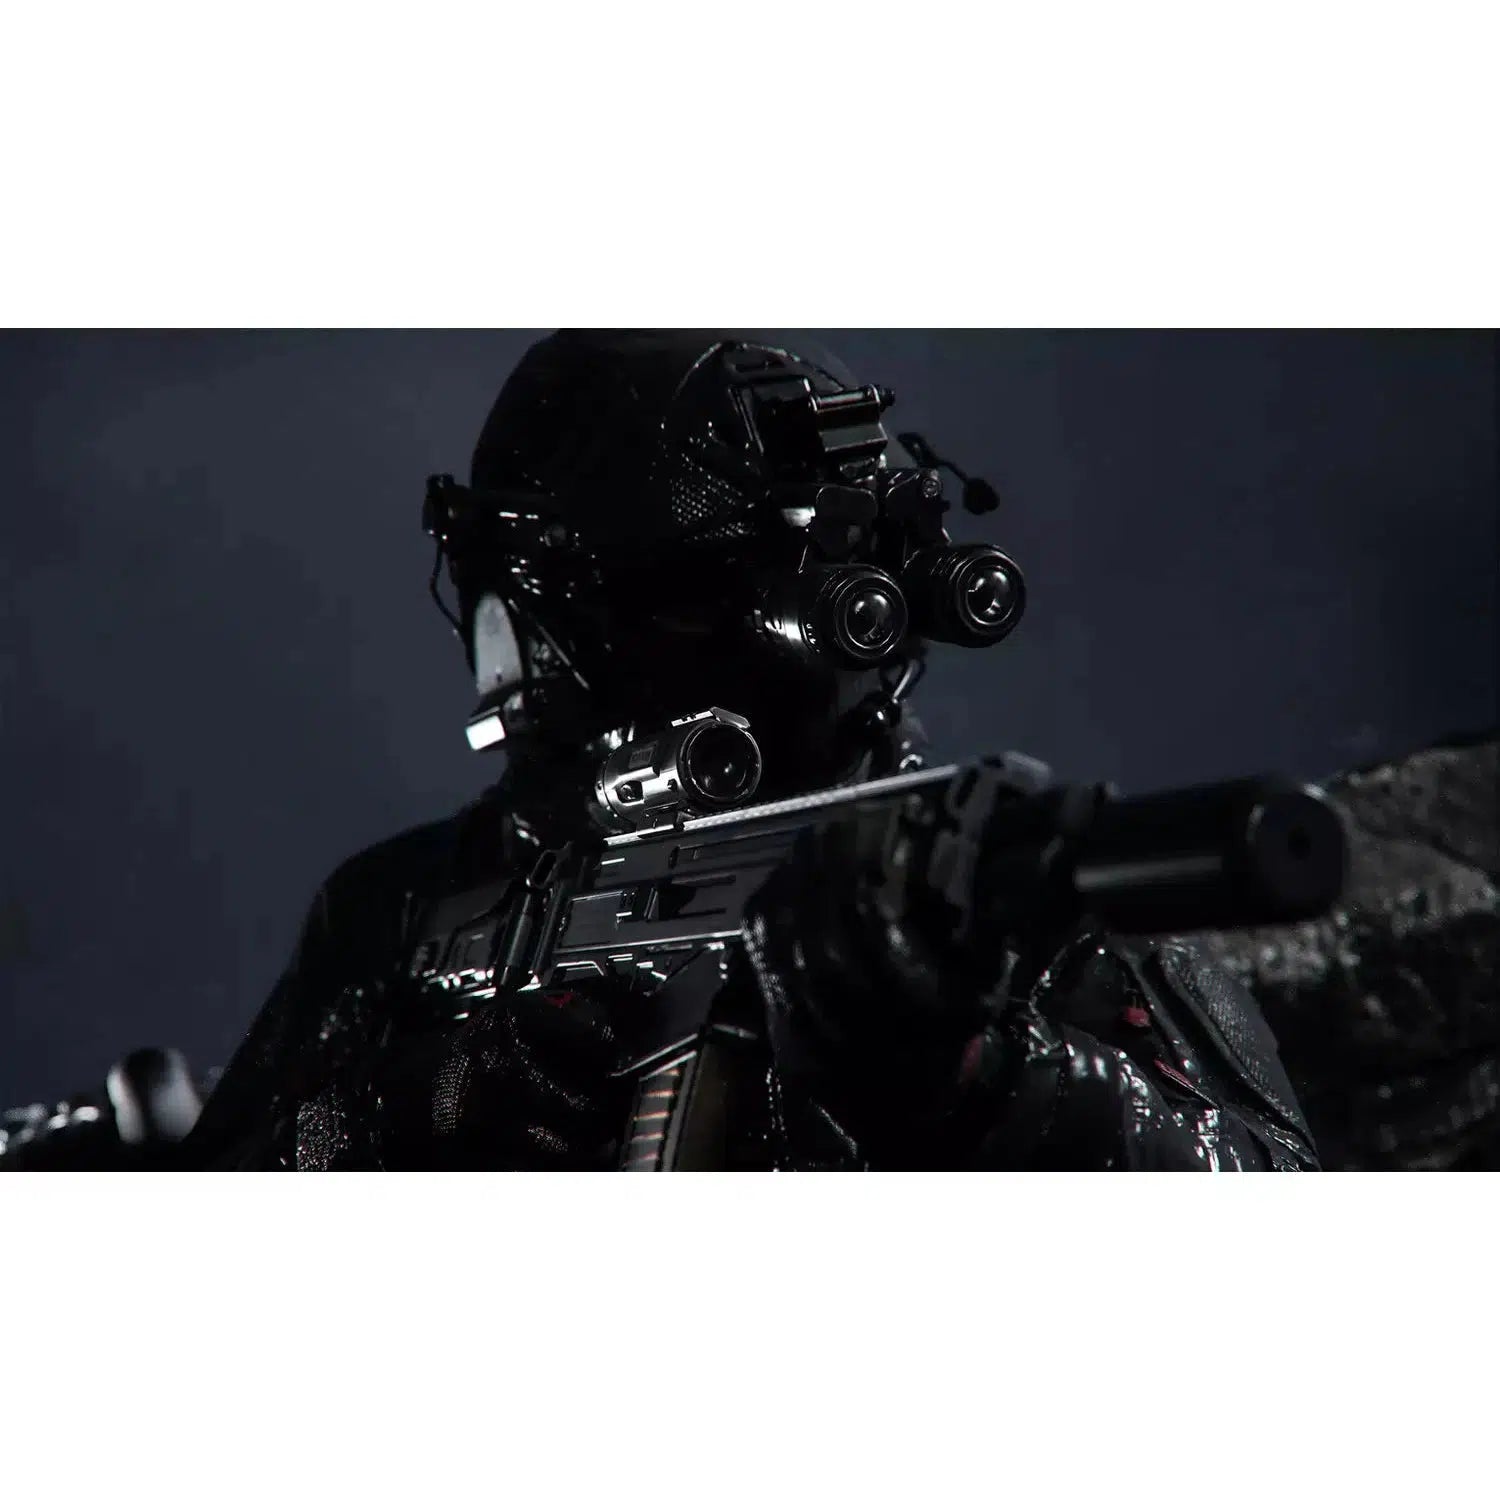 Call of Duty: Modern Warfare III (PS5)